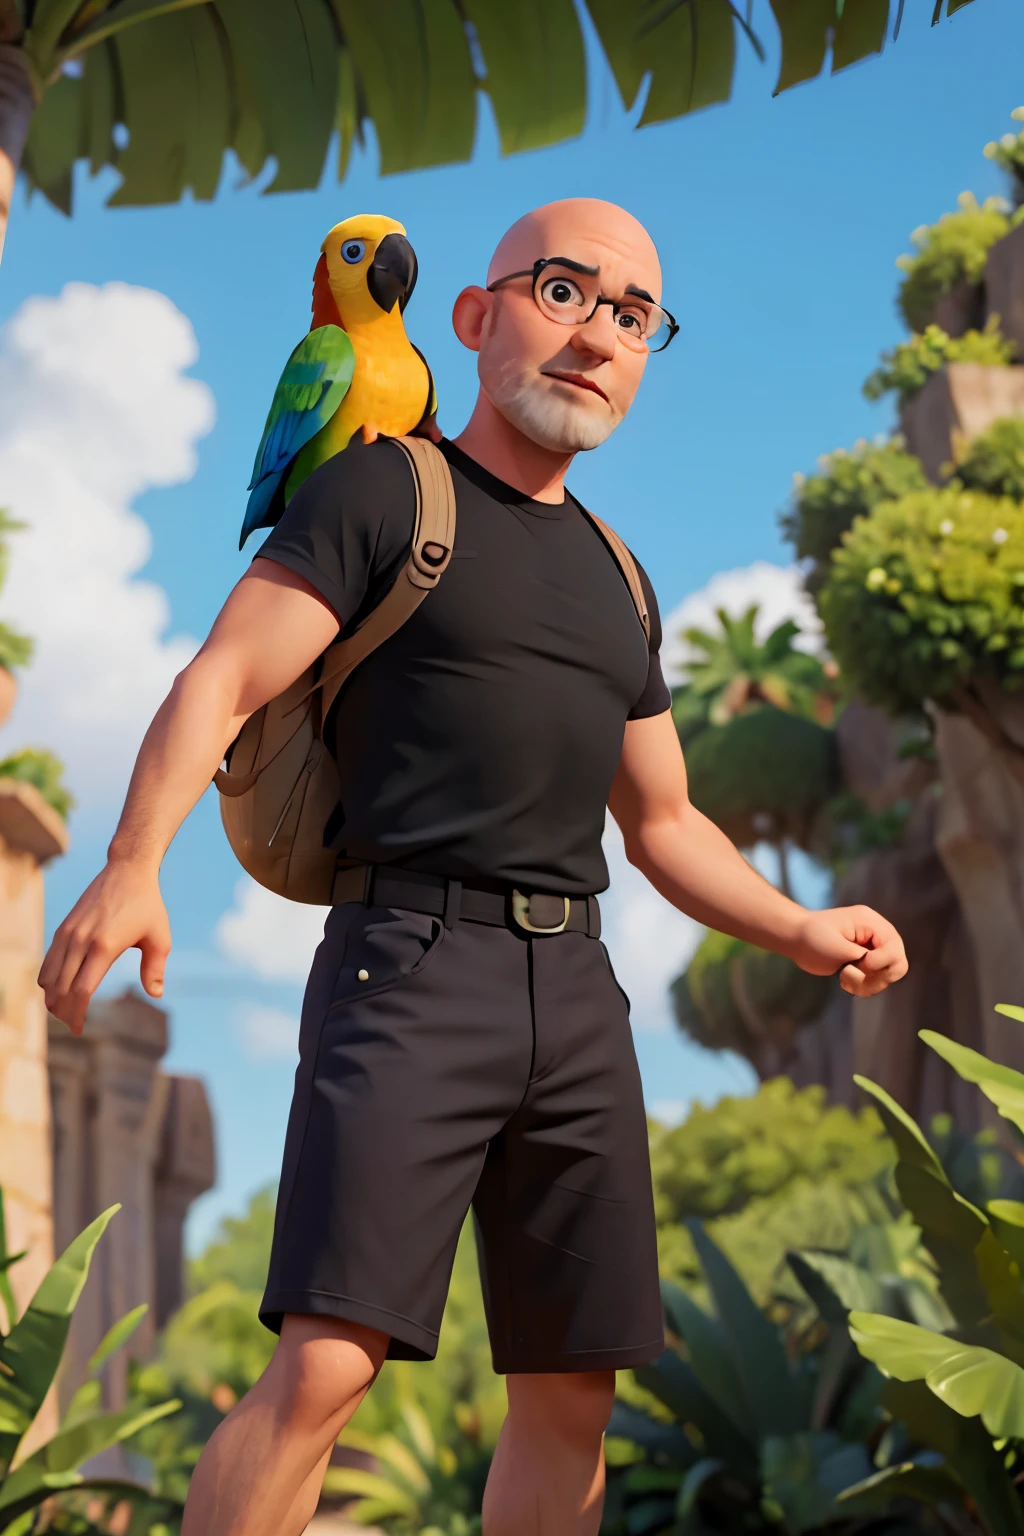 Créez un personnage de style Disney Pixar représentant un homme de 45 ans, poids moyen, chauve, homme blanc légèrement barbu portant des vêtements élégants, lunettes légèrement réfléchissantes. Il porte une chemise noire avec un sac à dos sur le dos. L&#39;accompagner est un grand, perroquet coloré perché sur son épaule, sur fond de jungle.